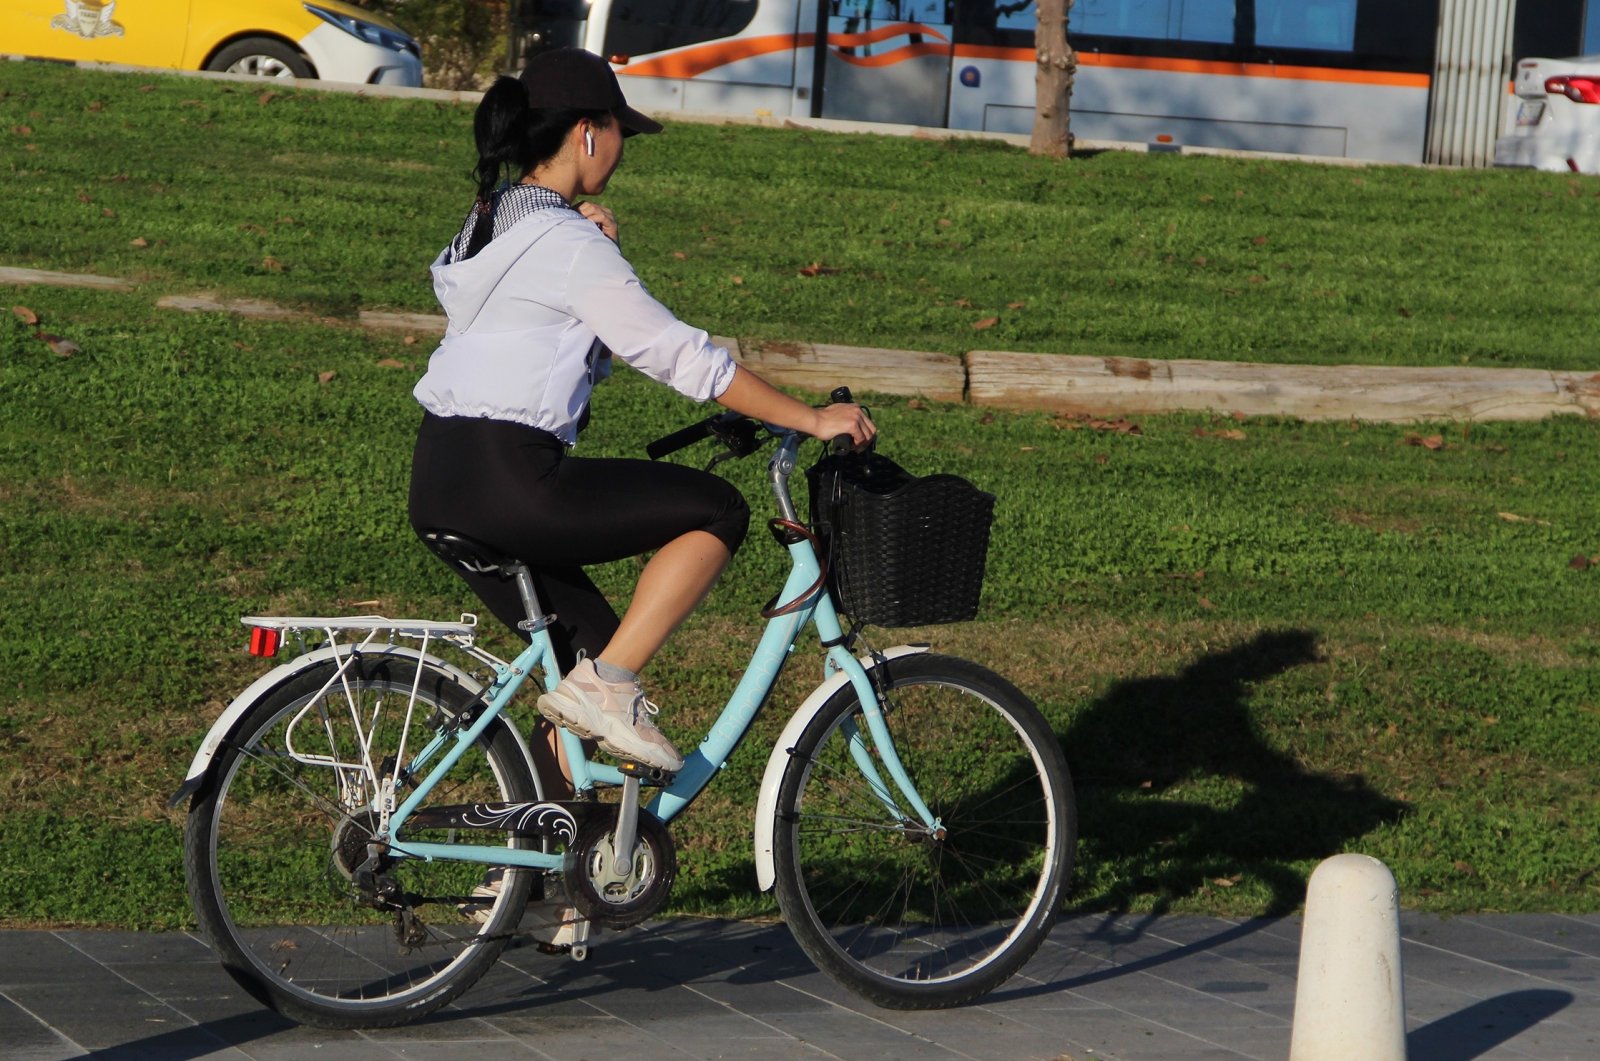 A girl rides a bike, Antalya, Turkey, Jan. 10, 2022. (IHA Photo)